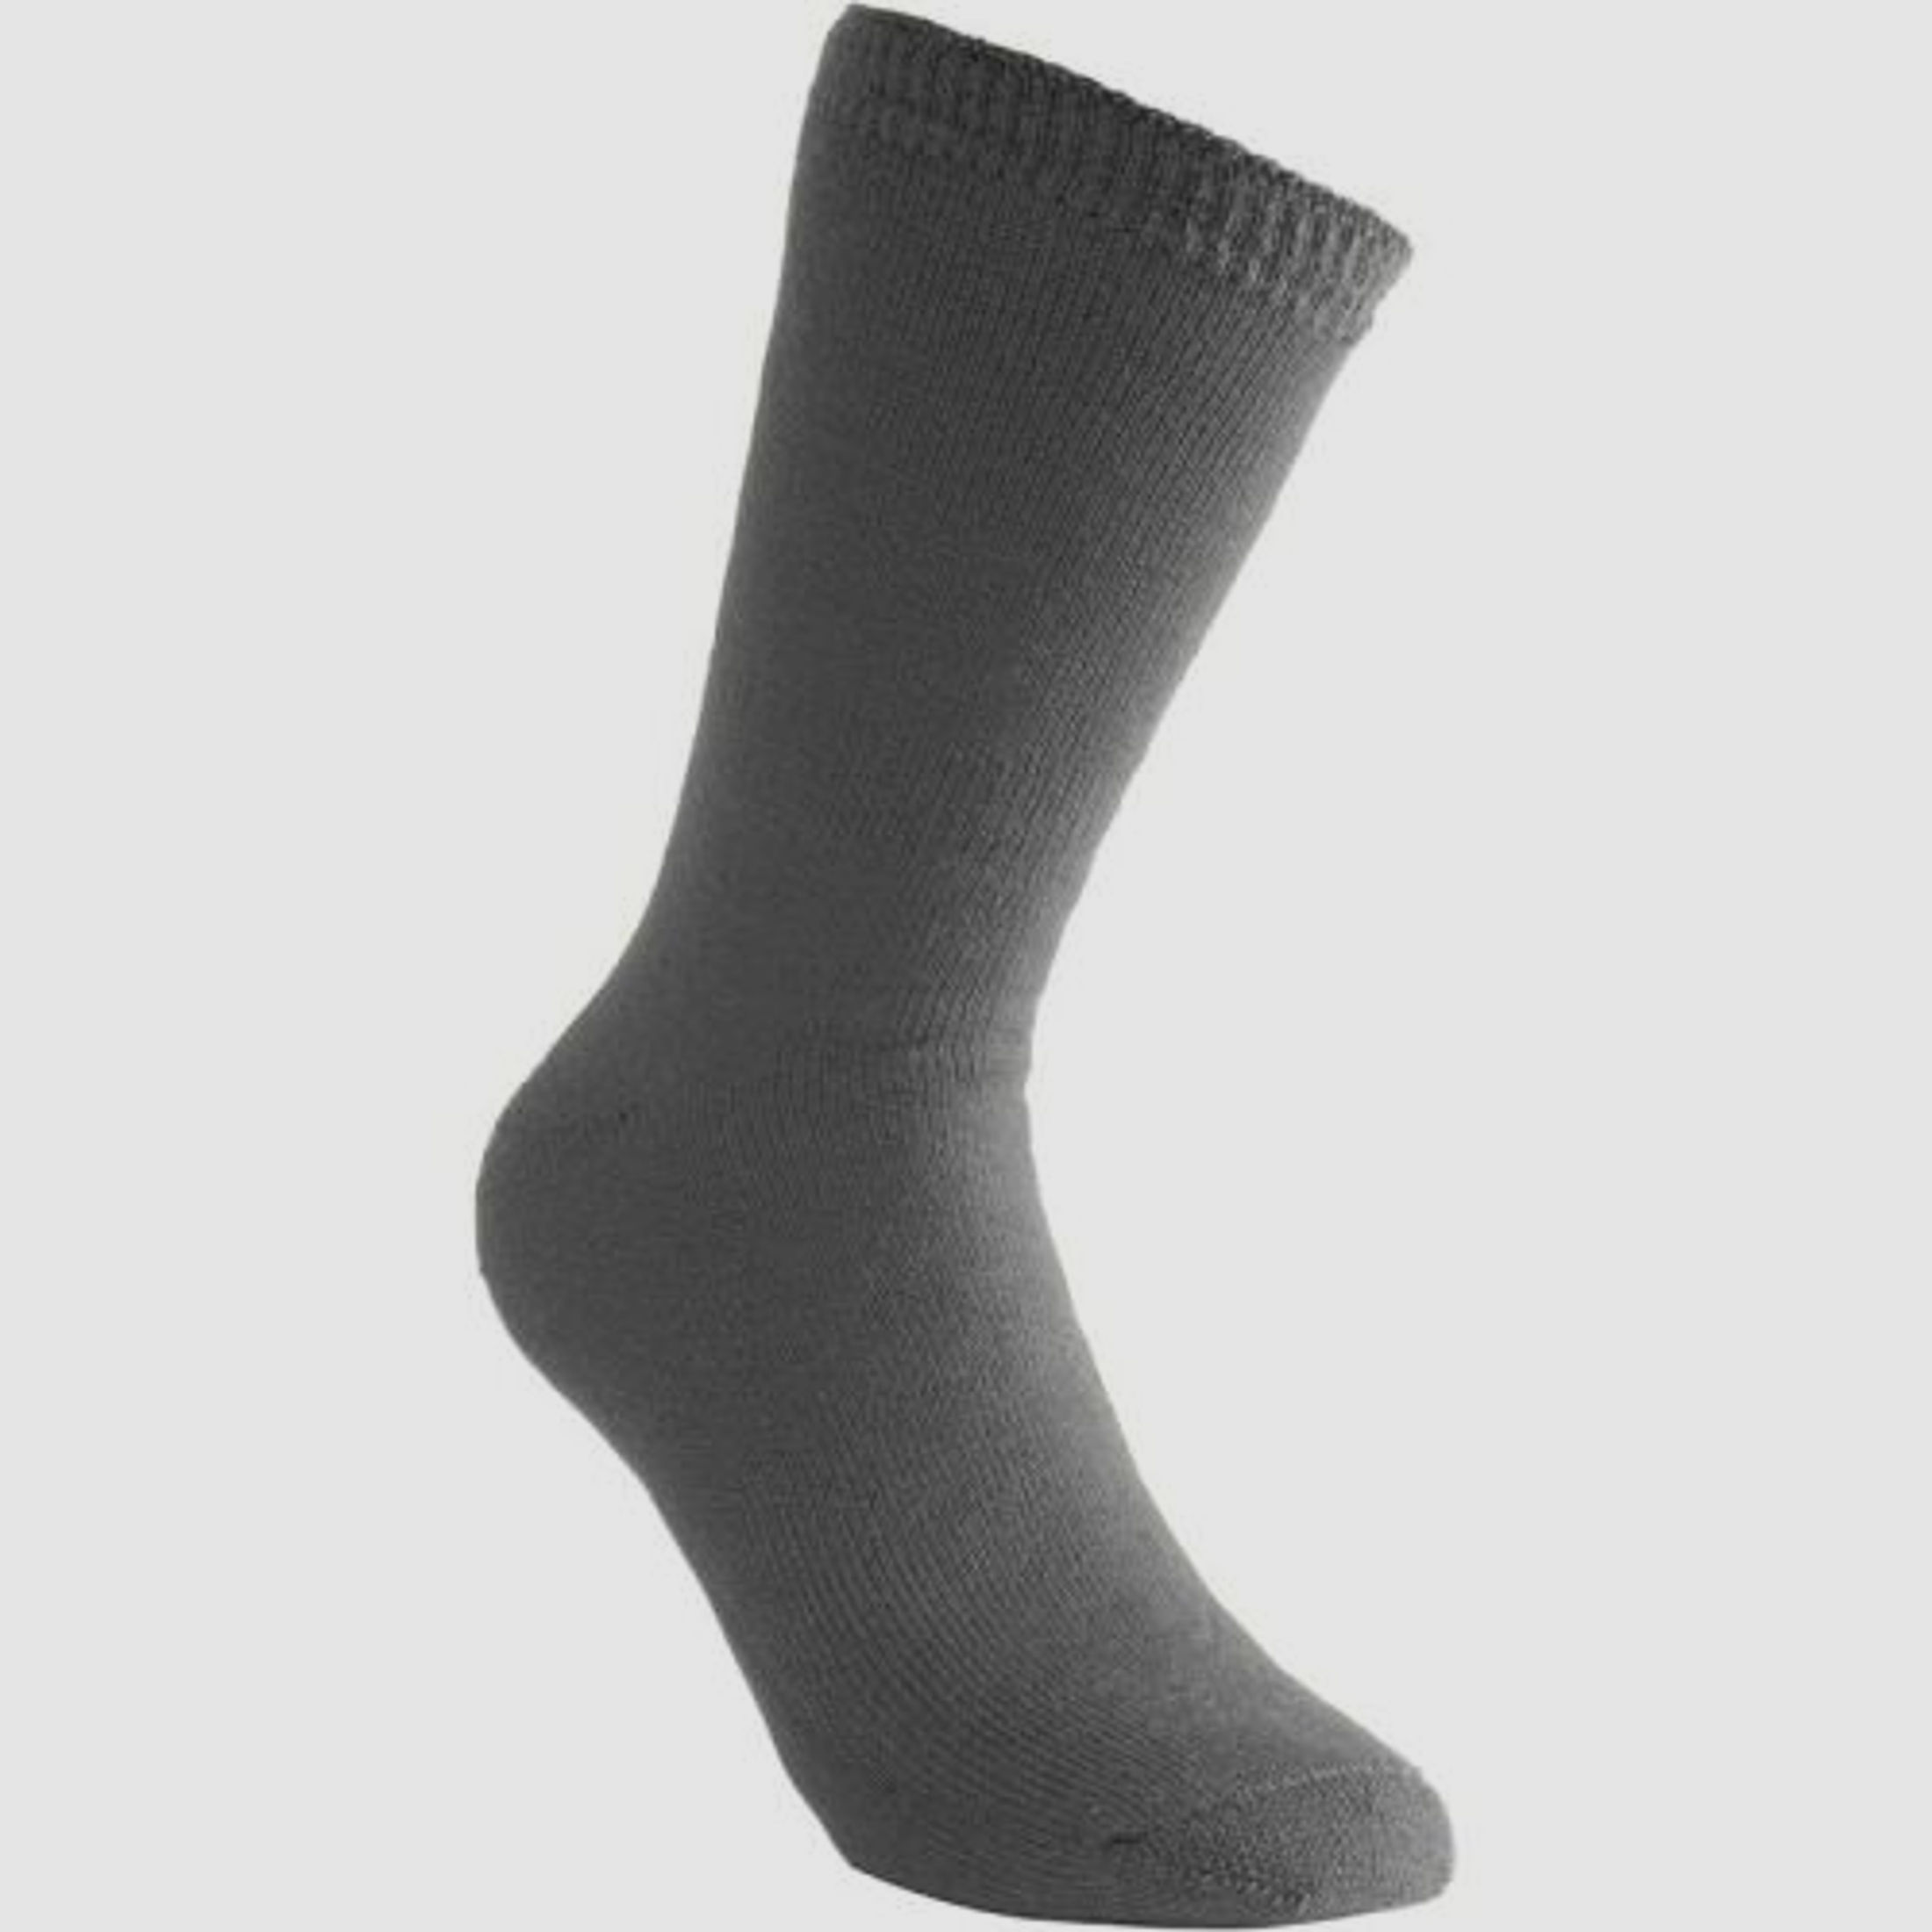 Woolpower Socken 400 36-39 grau